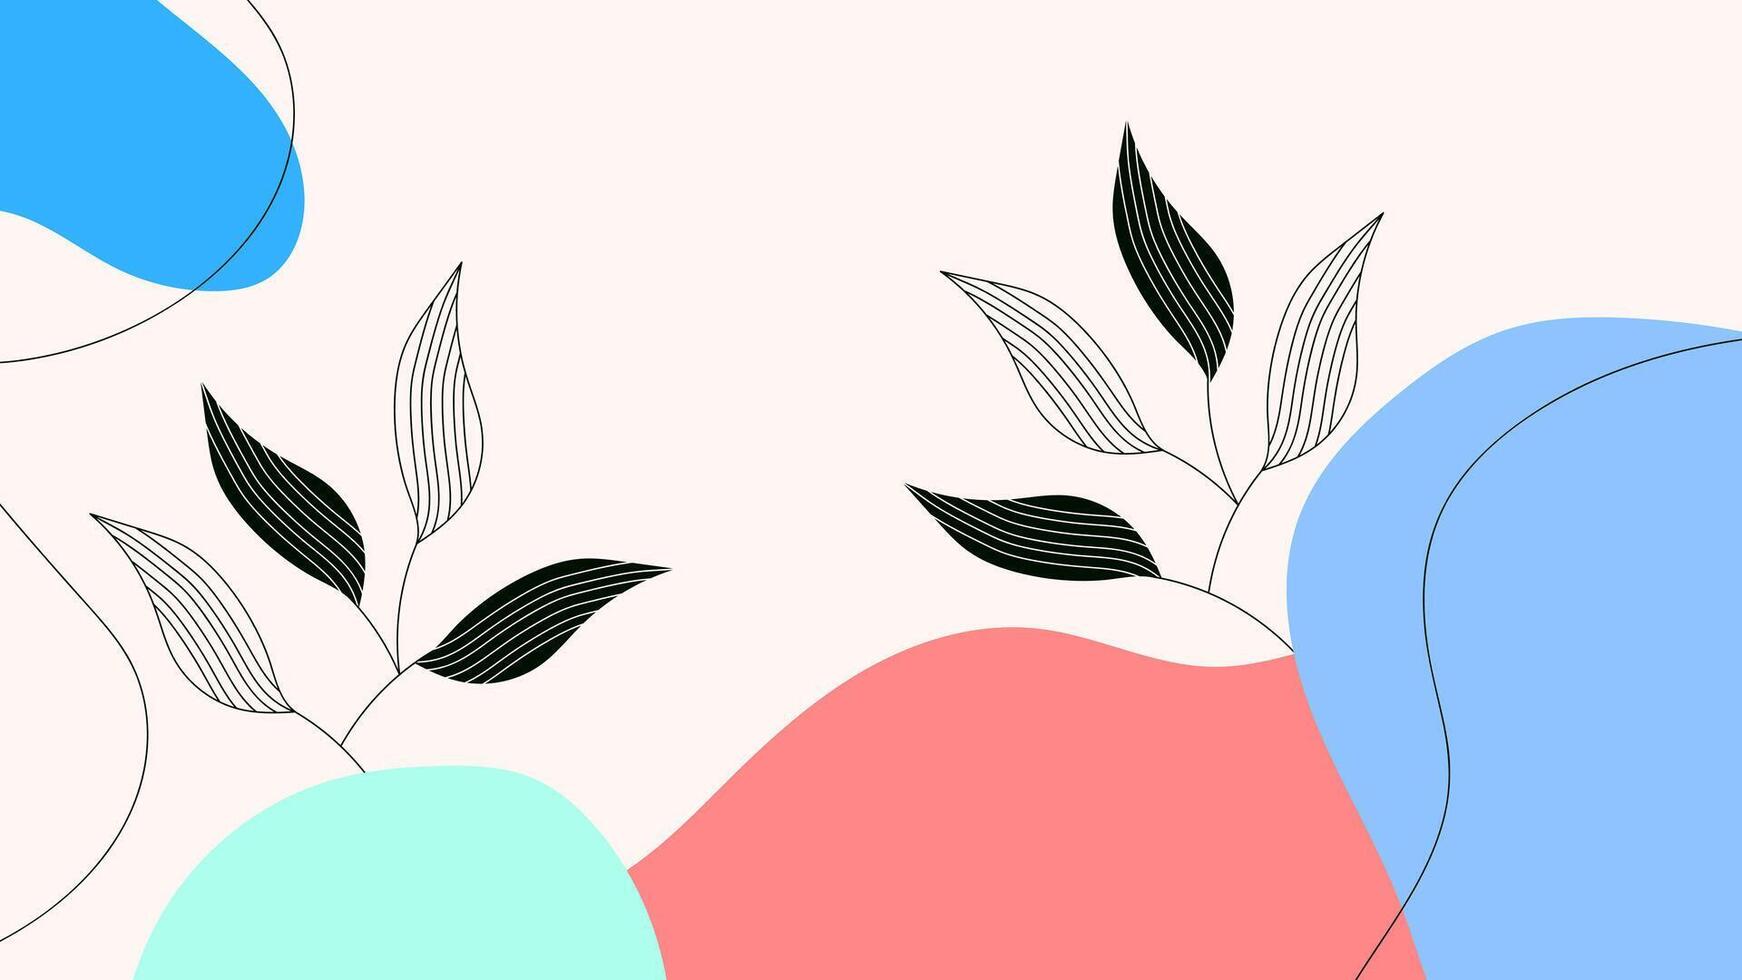 abstrakt ästhetisch Hintergrund Hand gezeichnet organisch gestalten mit Blatt Pflanze Ornament Pastell- eben Farbe Design Vektor Vorlage zum Hintergrund, Abdeckung, Poster